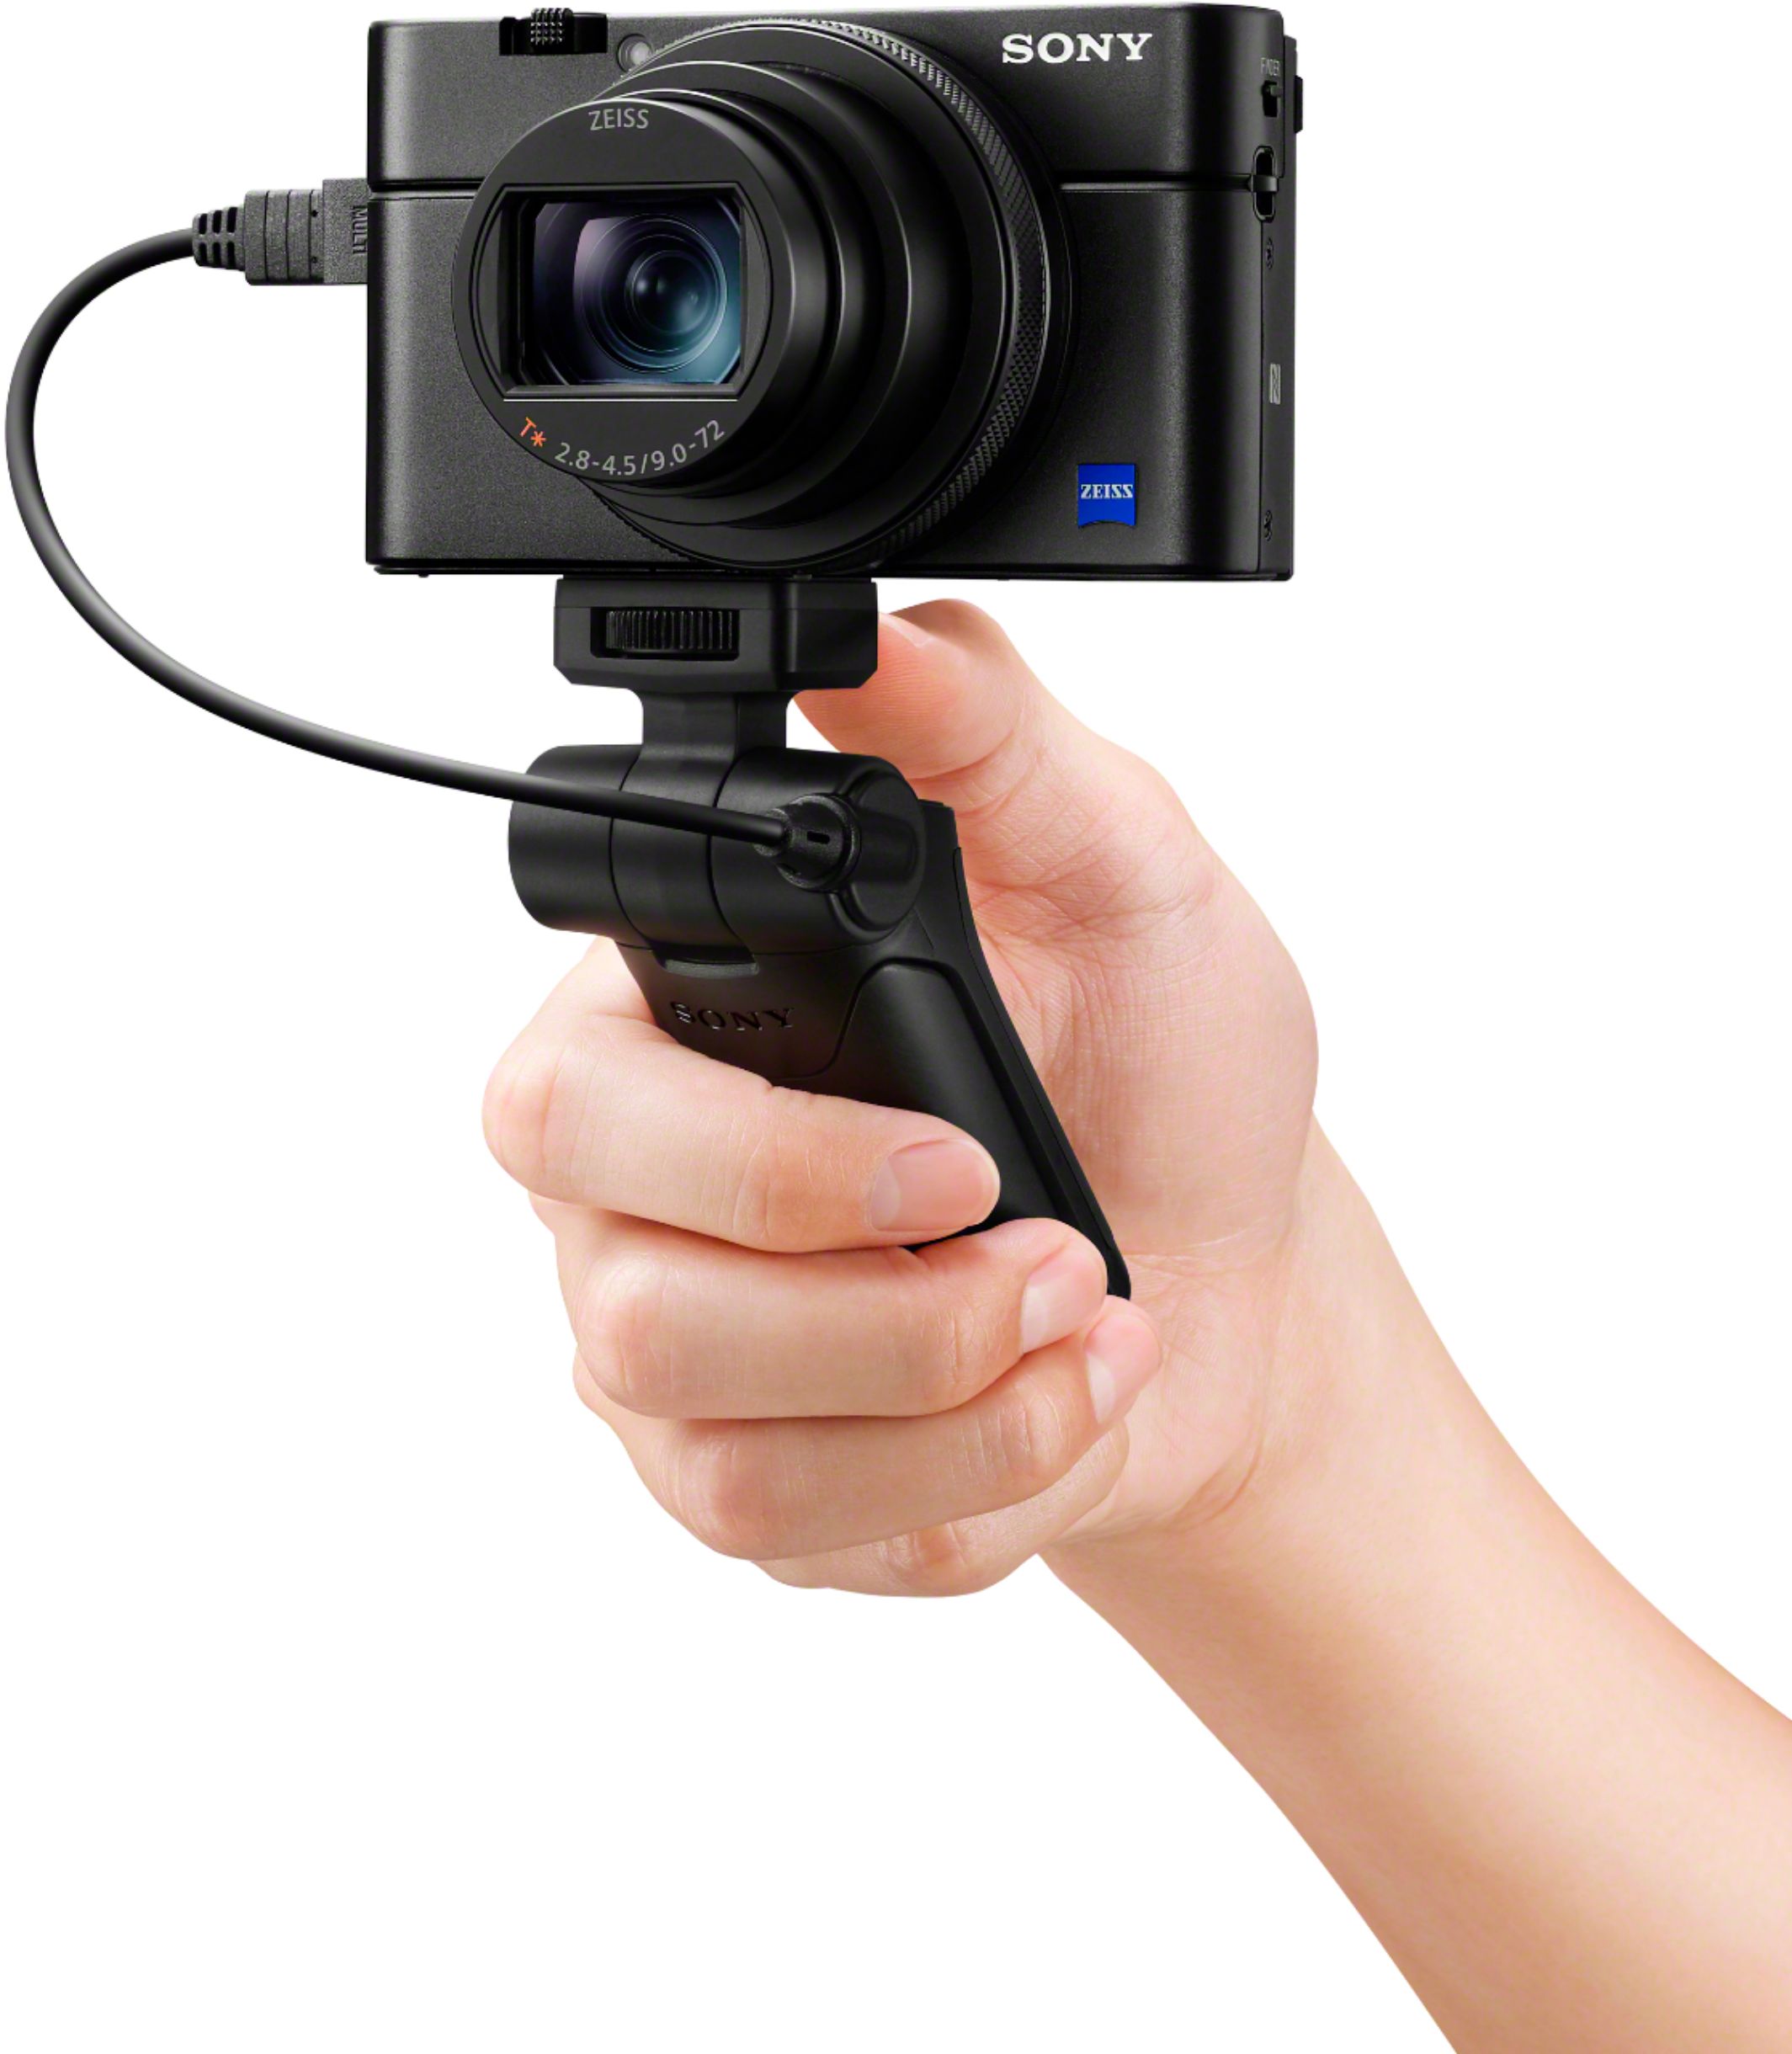 Sony Cyber-shot 20.1-Megapixel Digital Camera Black DSCRX100M7/B Best Buy